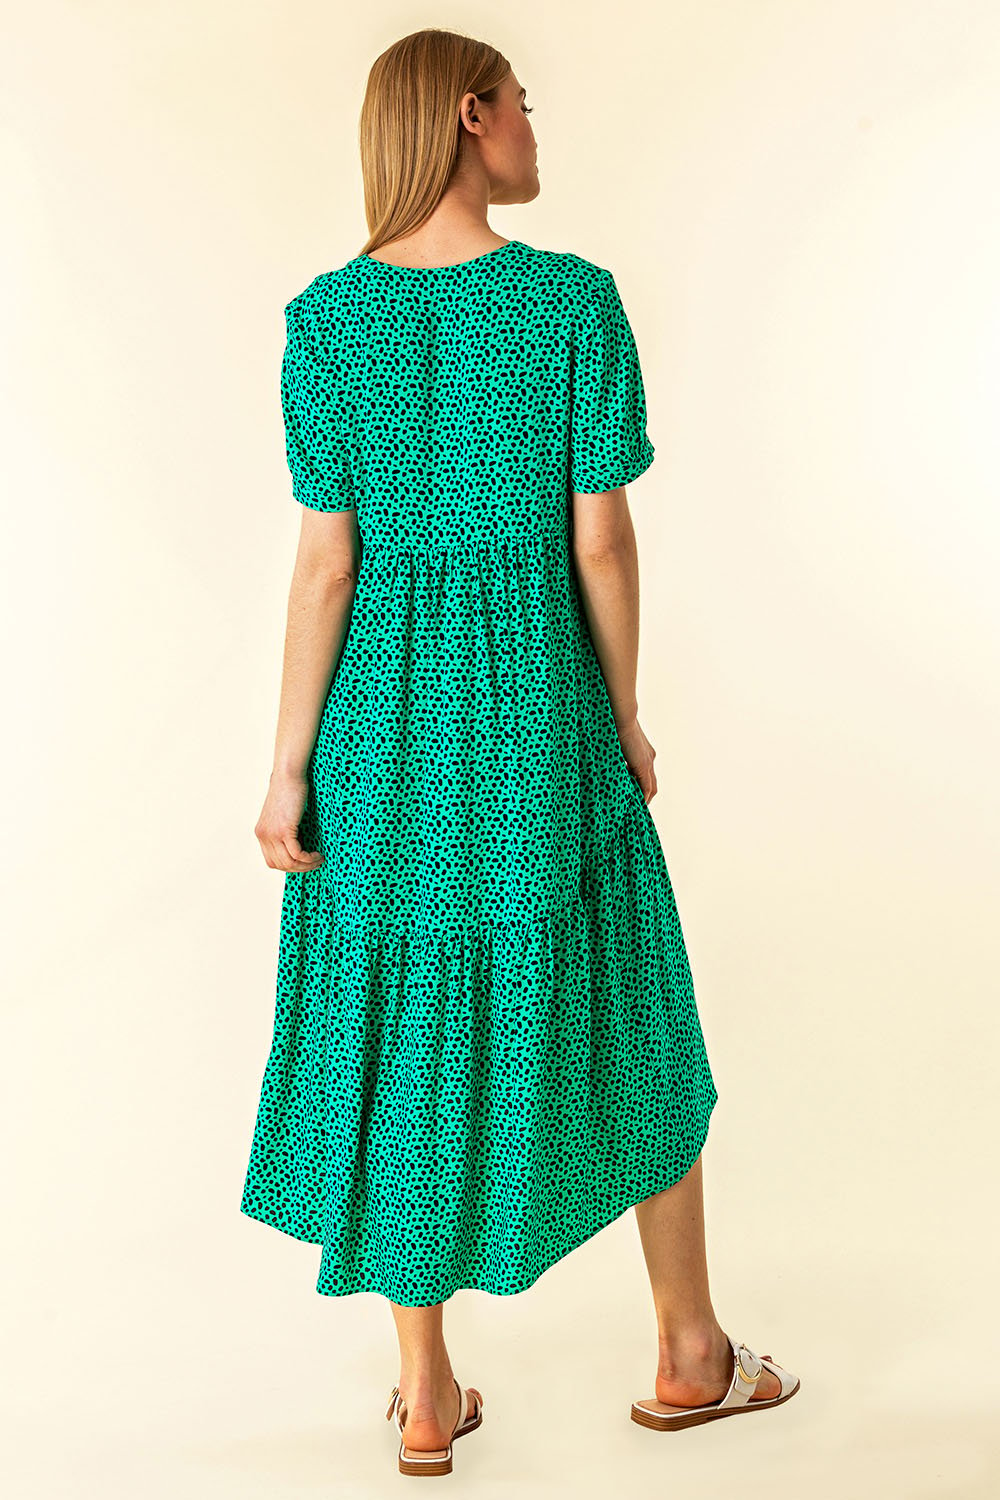 Green Spot Print Tiered Midi Dress, Image 2 of 4